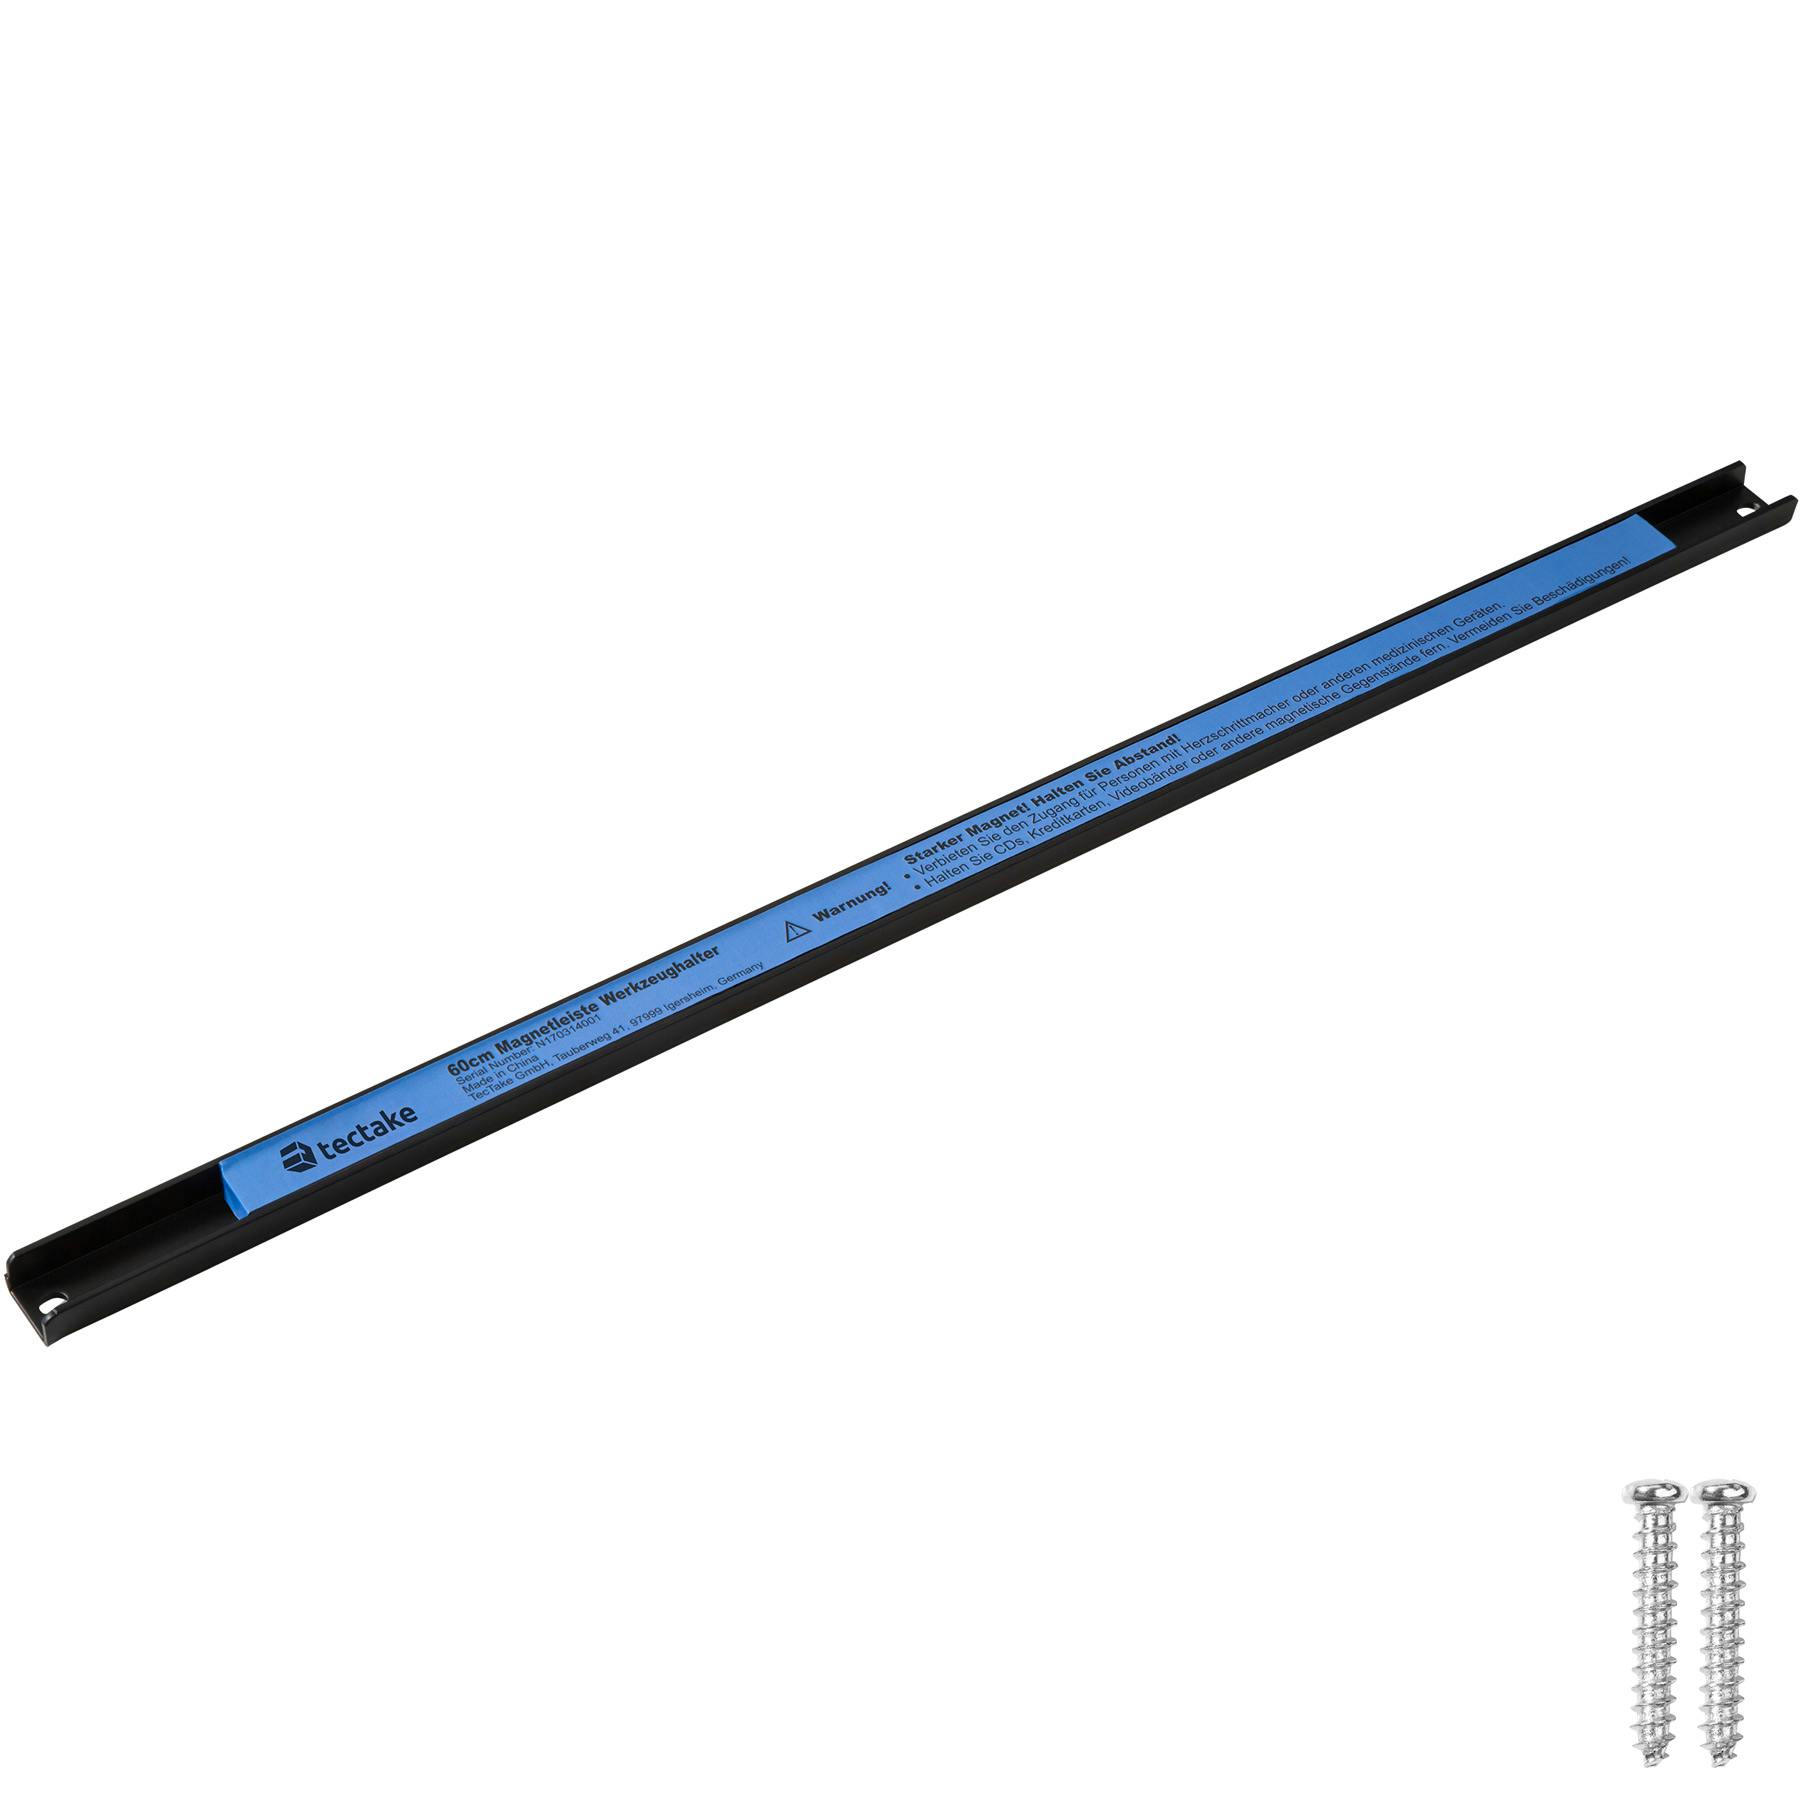 Barre magnétique pour outils / Porte-outils magnétique 35 cm